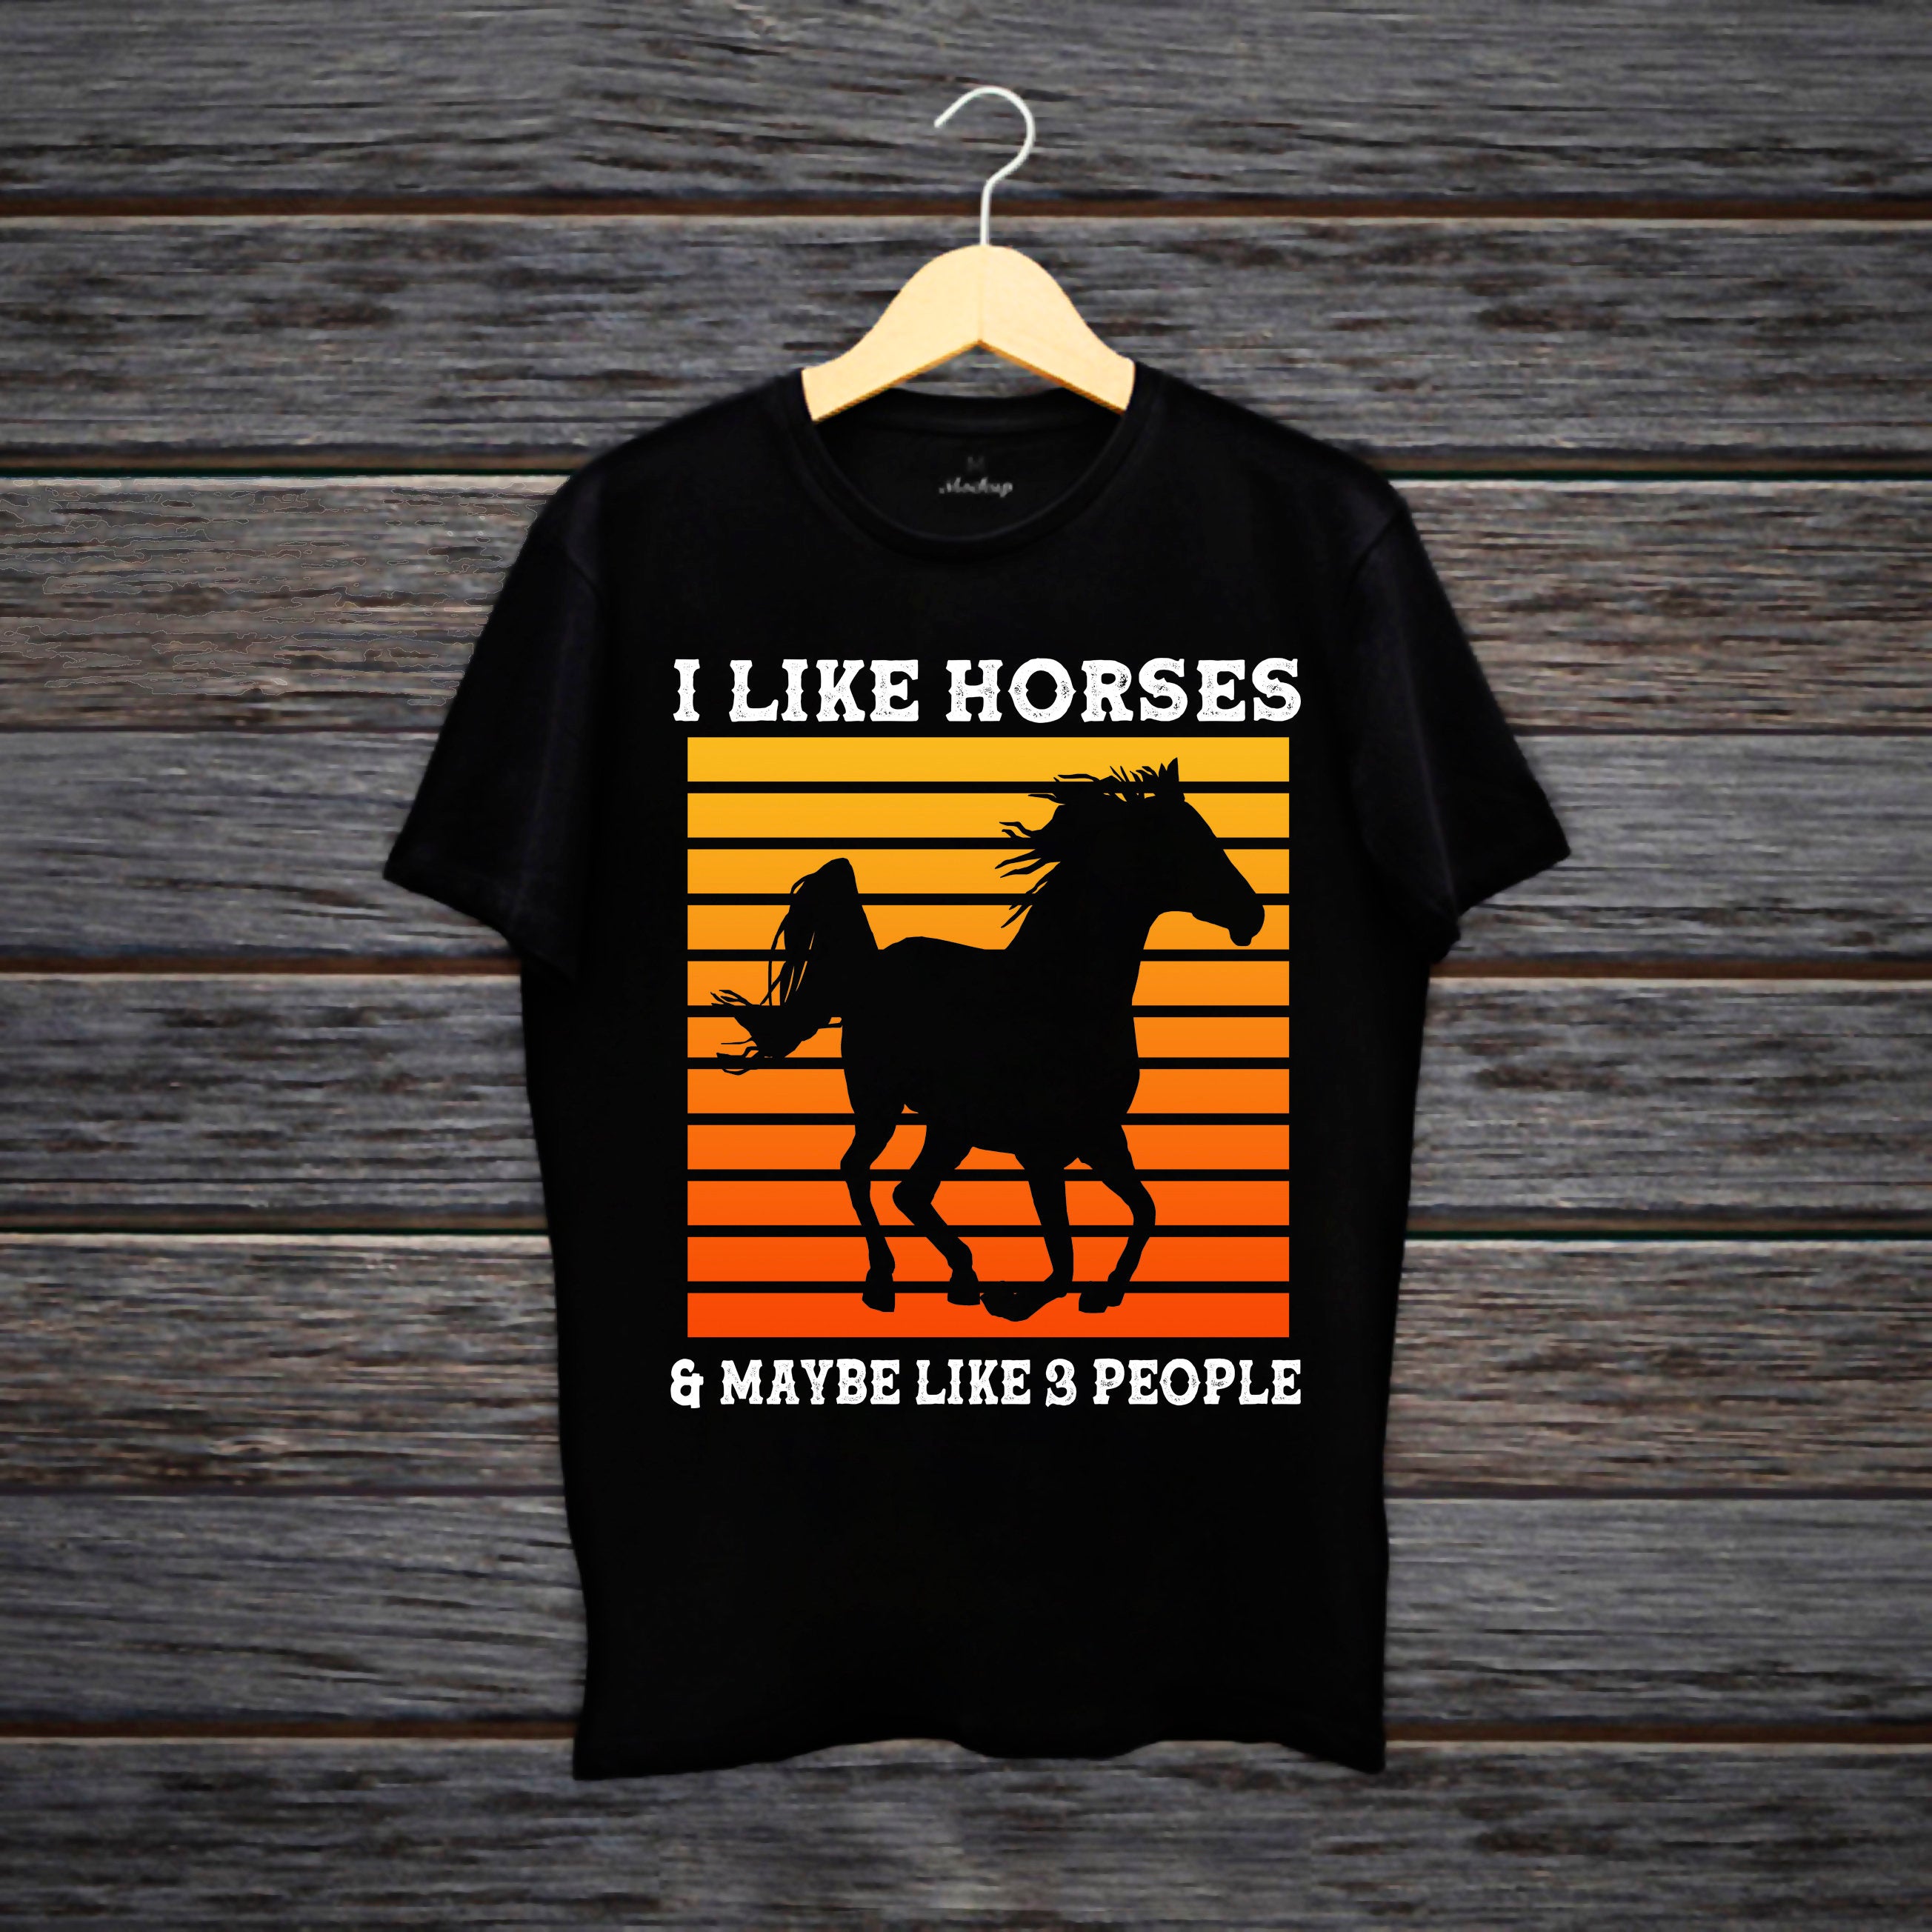 Кашуля I Like Horses Dogs And Maybe 3 People, кашуля для аматараў коней, кашуля з конямі для дзяўчынак, падарунак уладальнікам коней, кашуля для фермераў, падарунак для коней, футболка з конямі - plusminusco.com